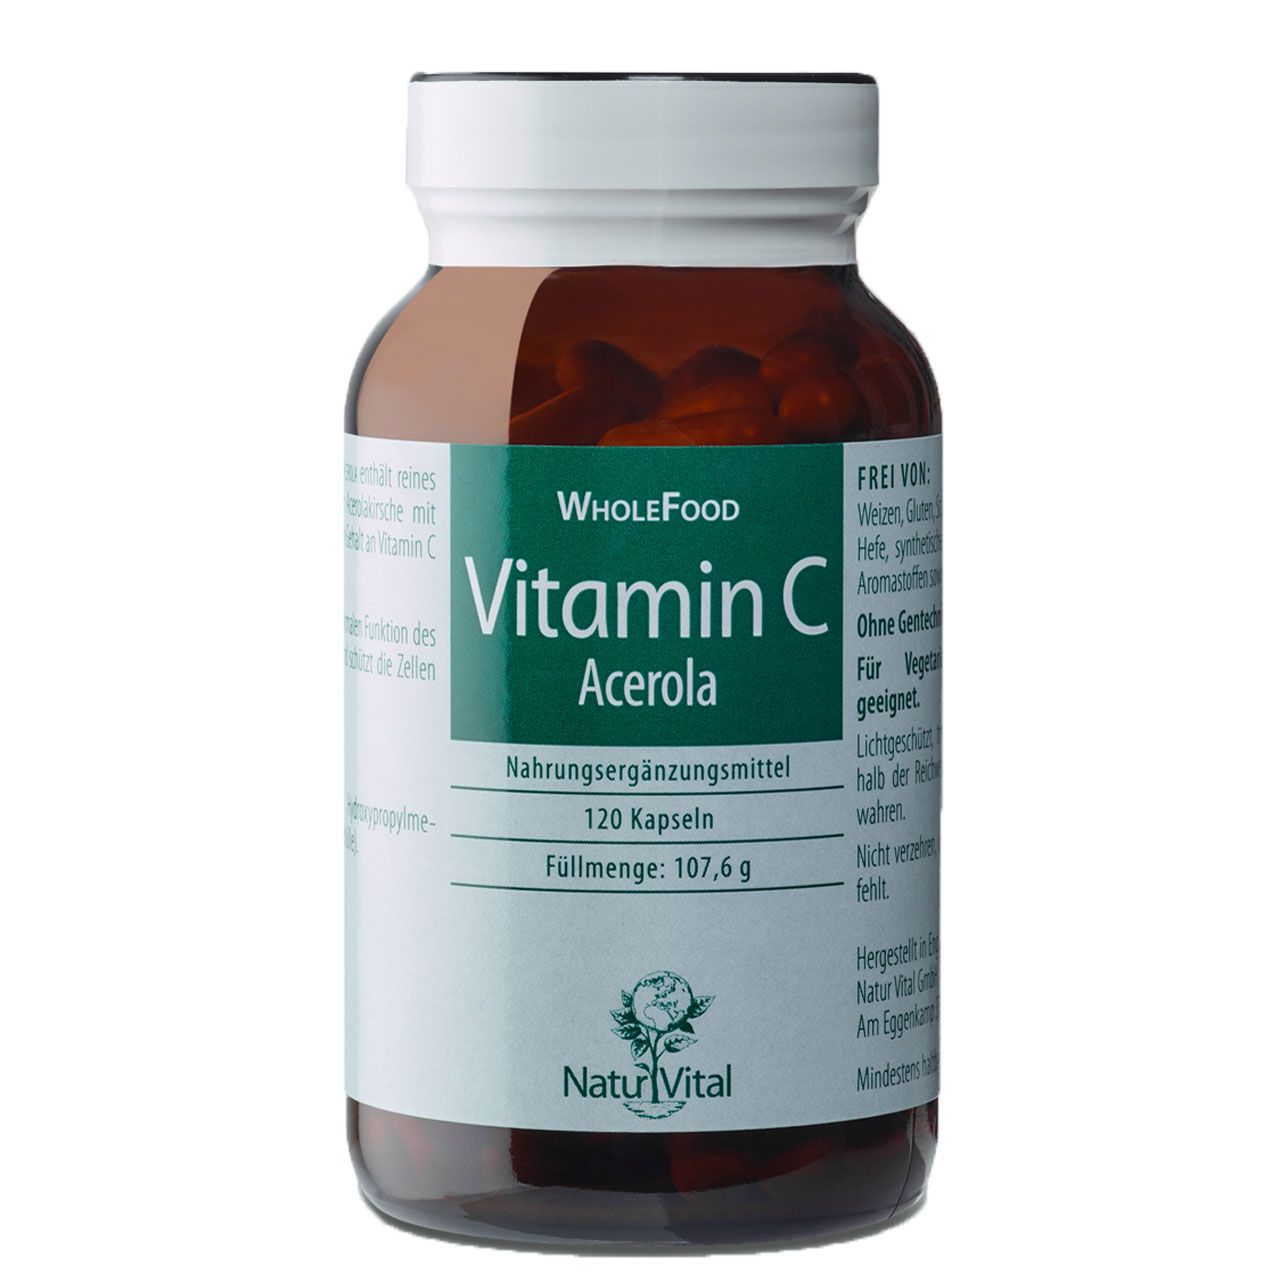 Vitamin C Acerola von Natur Vital beinhaltet 120 Kapseln